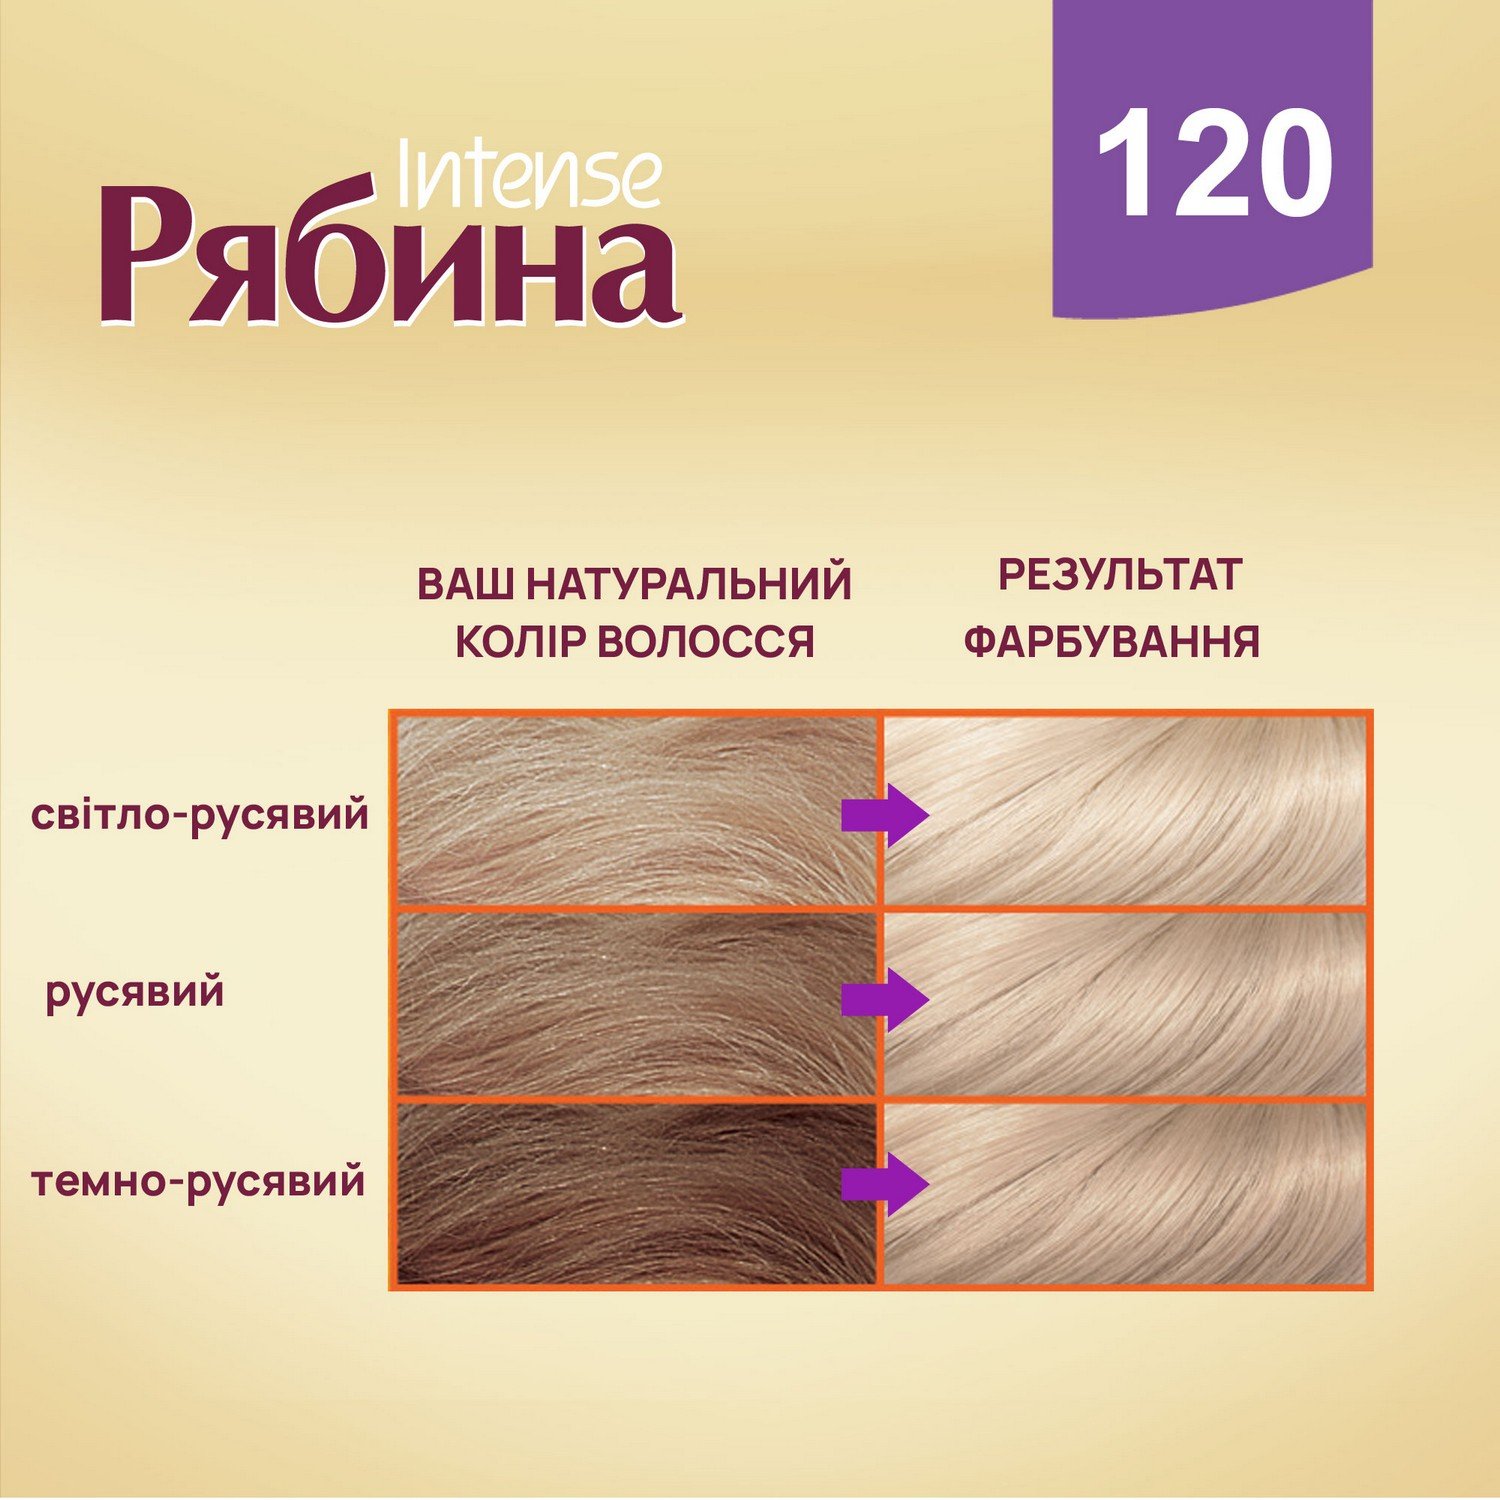 Крем-краска для волос Рябина Intense, оттенок 120 (Жемчужно-серебристый), 138 мл - фото 5